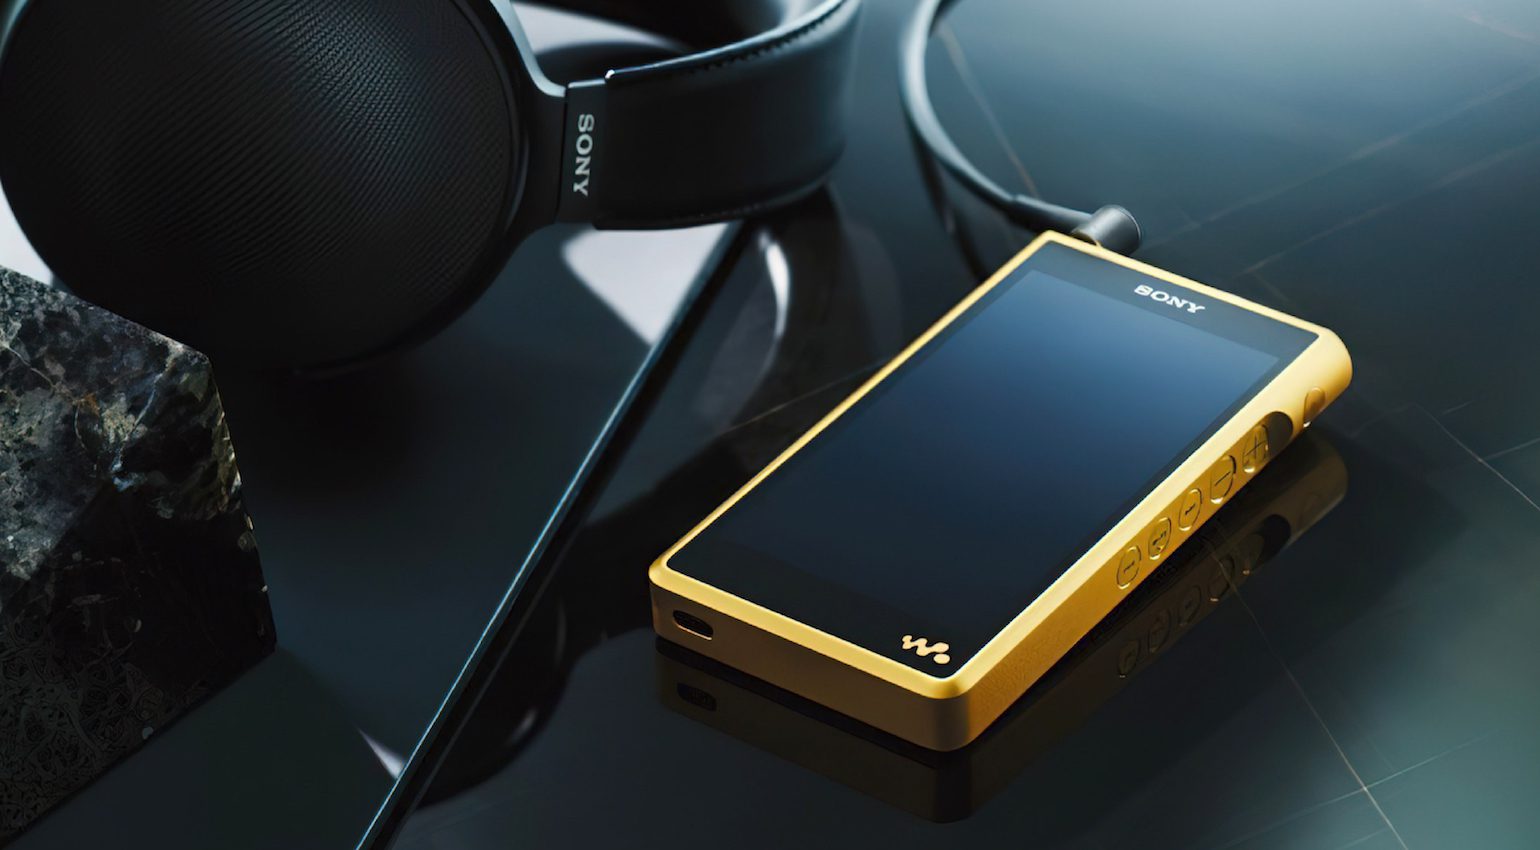 Sony Walkman est de retour : découvrez les nouveaux lecteurs MP3 de qualité audiophile